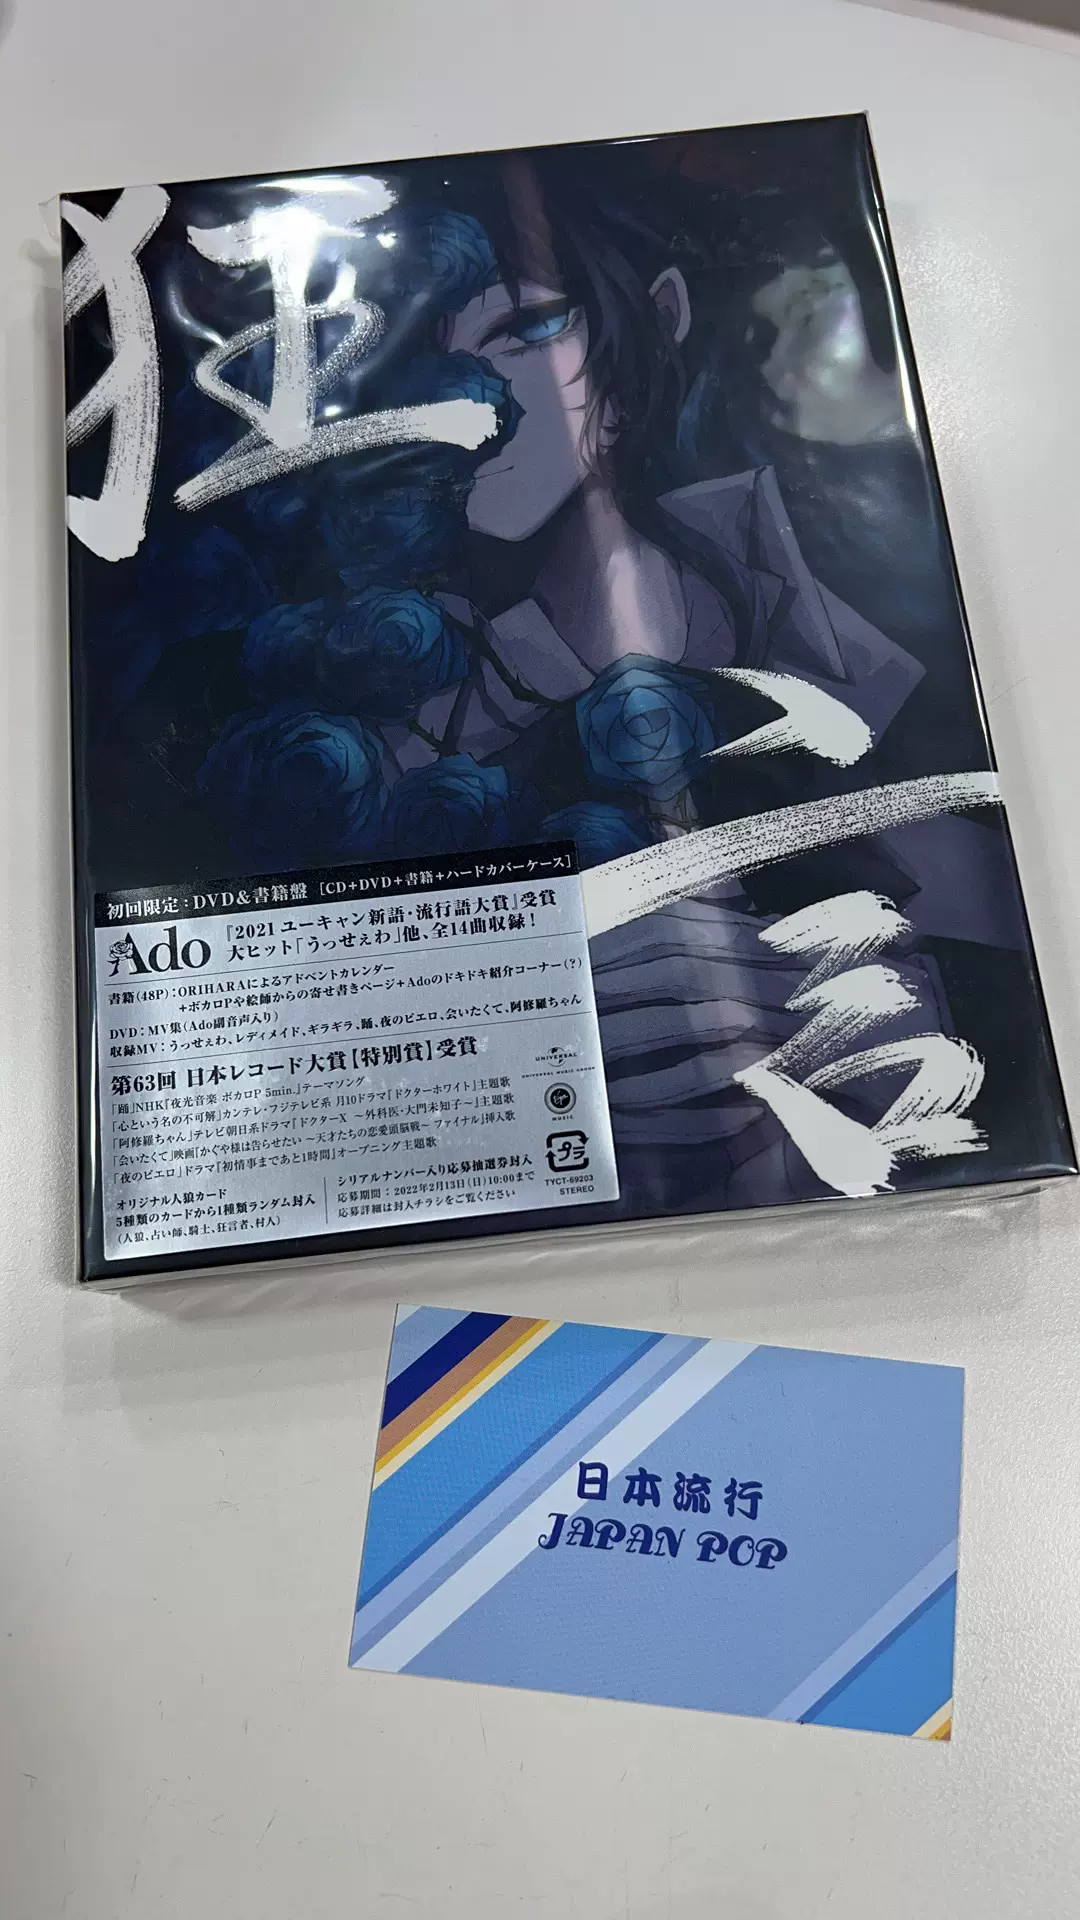 狂言Ado 狂言初回限定盘CD+DVD+设定集-Taobao